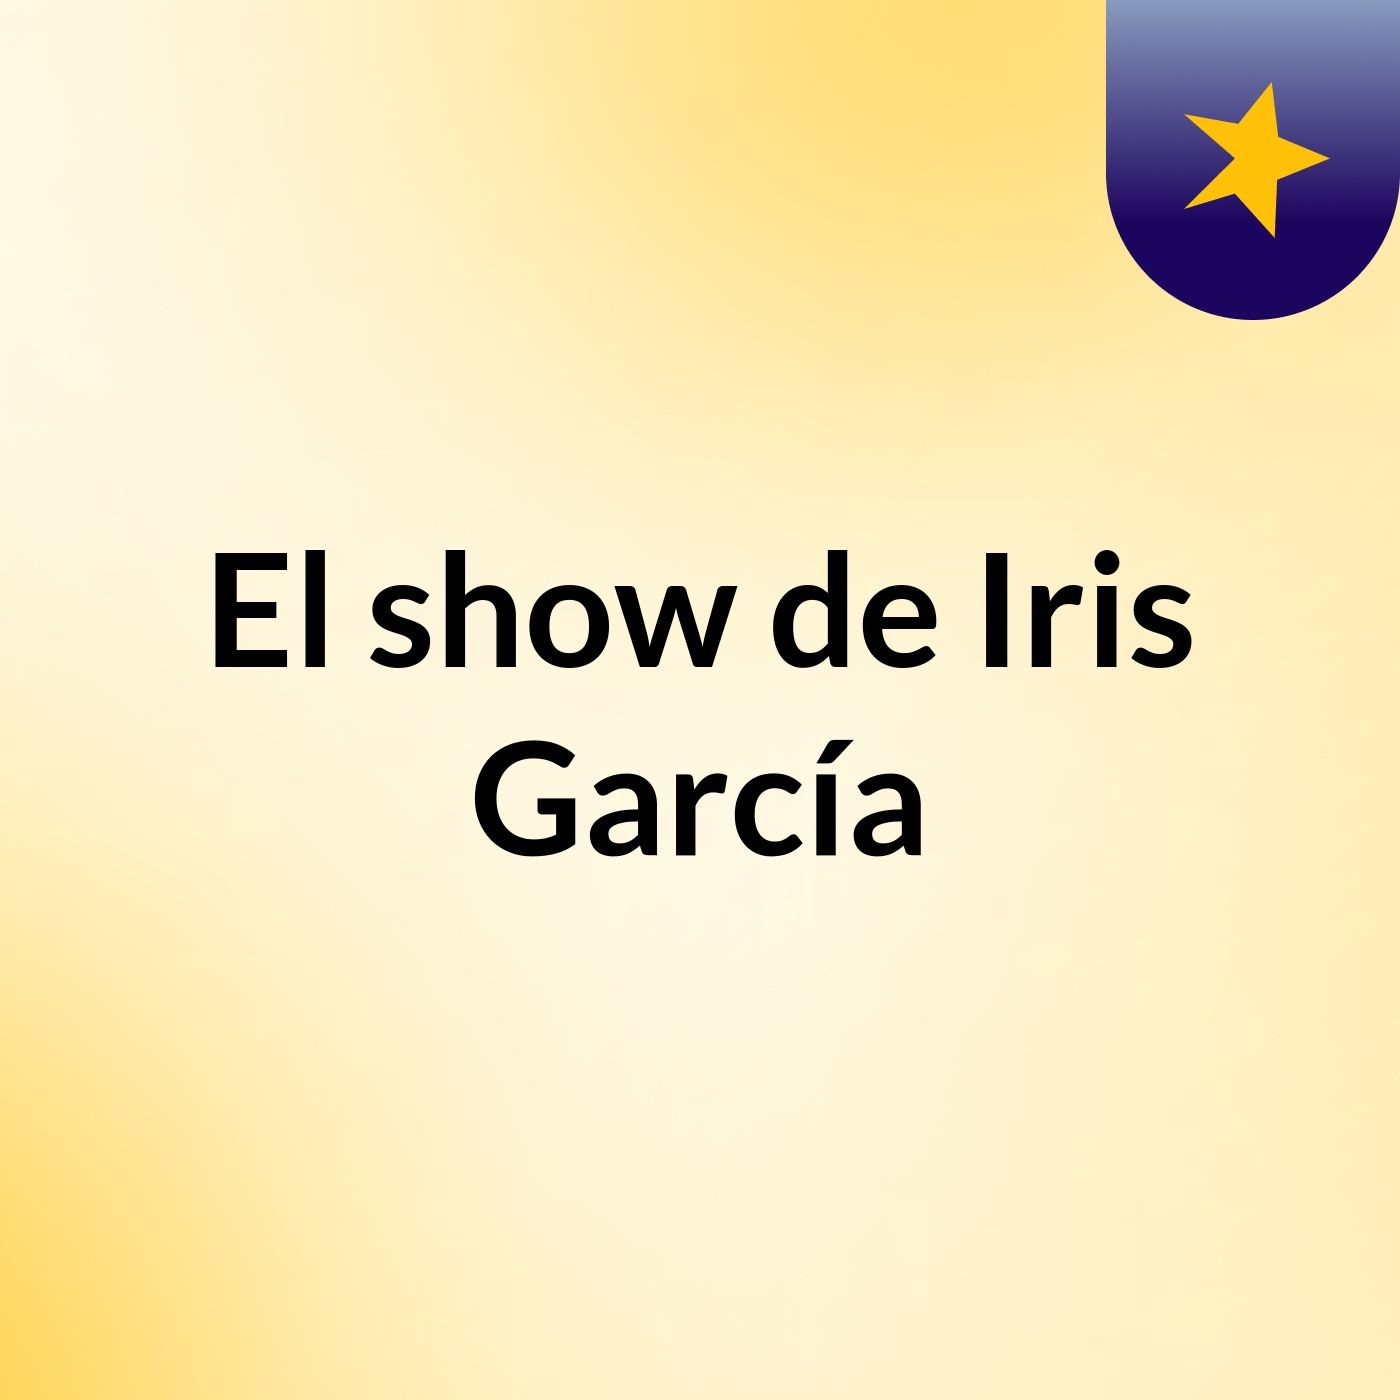 El show de Iris García